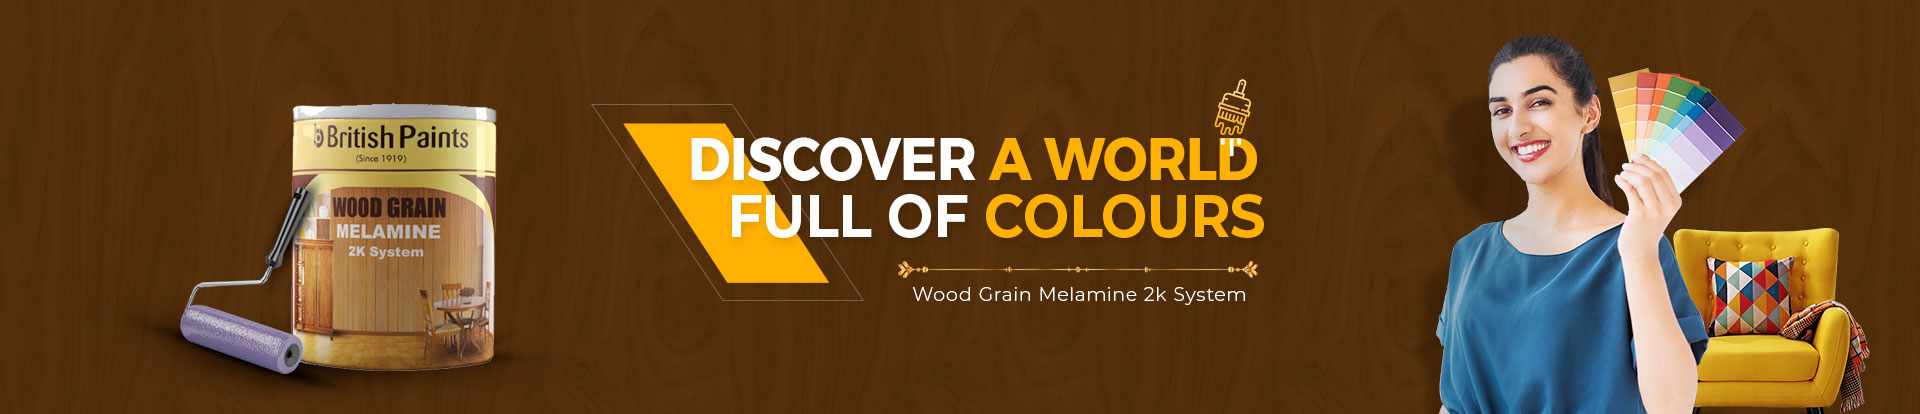 Wood Grain Melamine 2k System